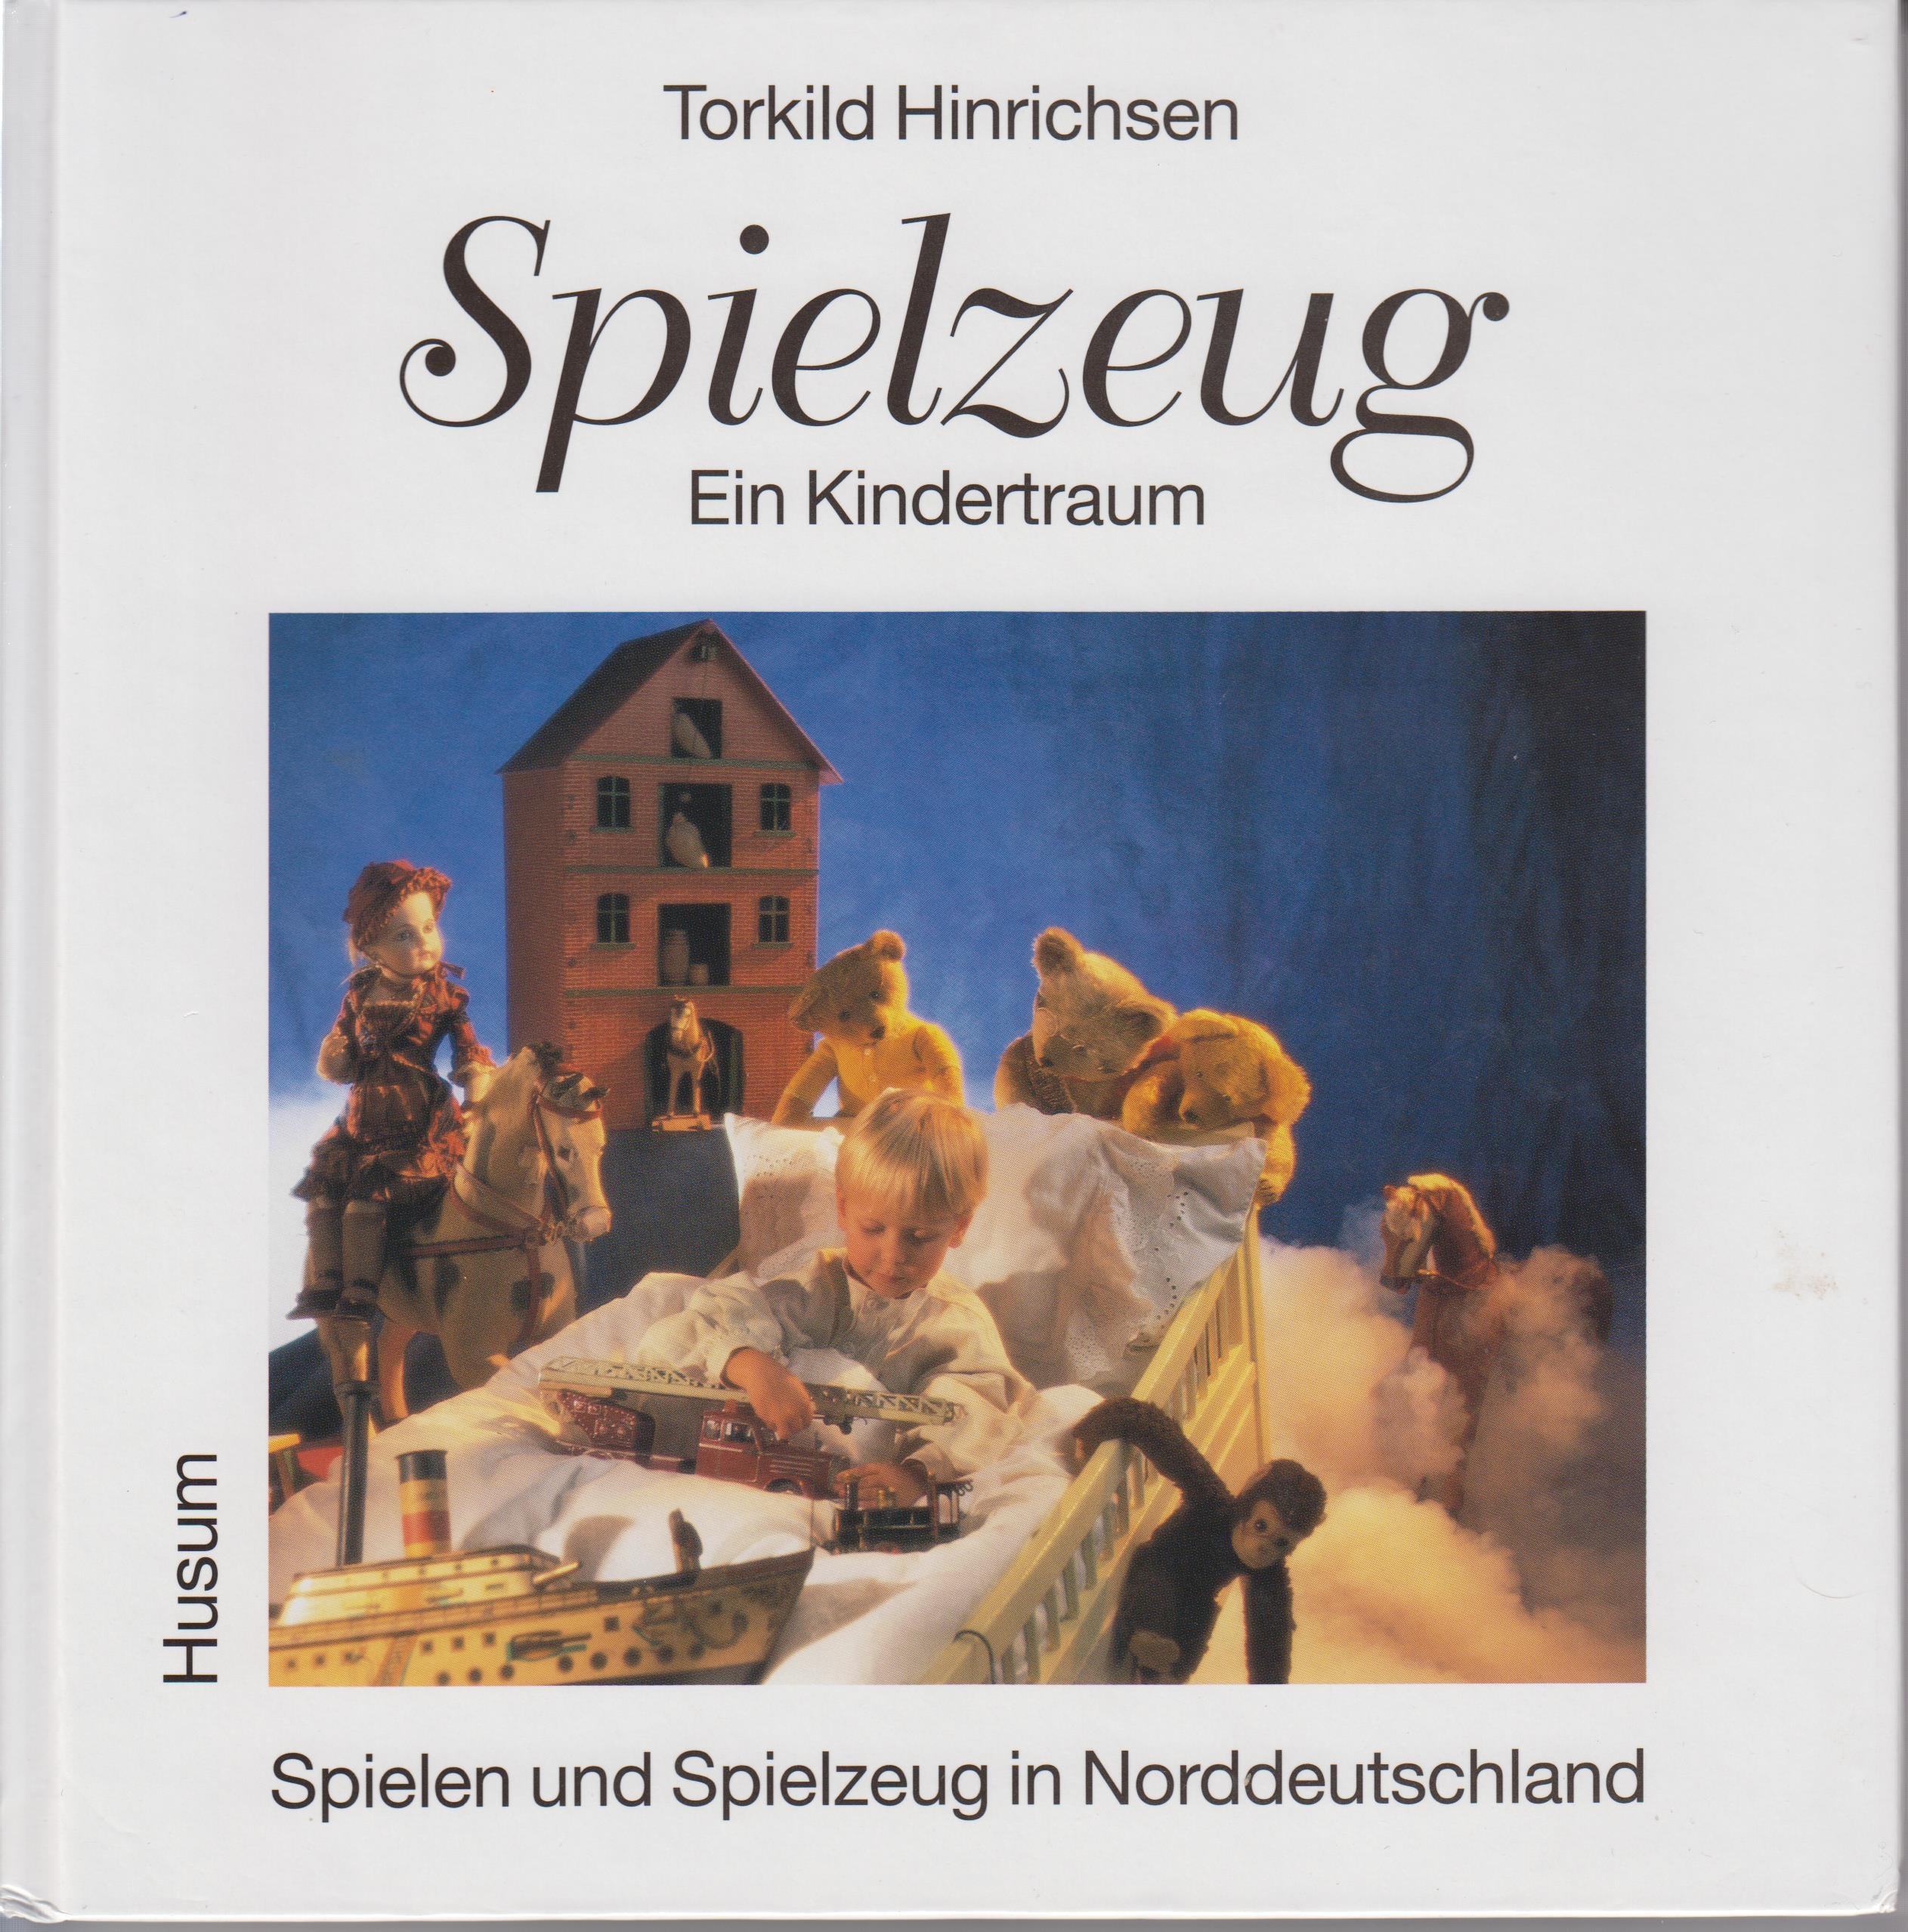 Hinrichsen, Torkild: Spielzeug : Ein Kindertraum (Városi Képtár - Hetedhét Játékmúzeum, Székesfehérvár CC BY-NC-SA)